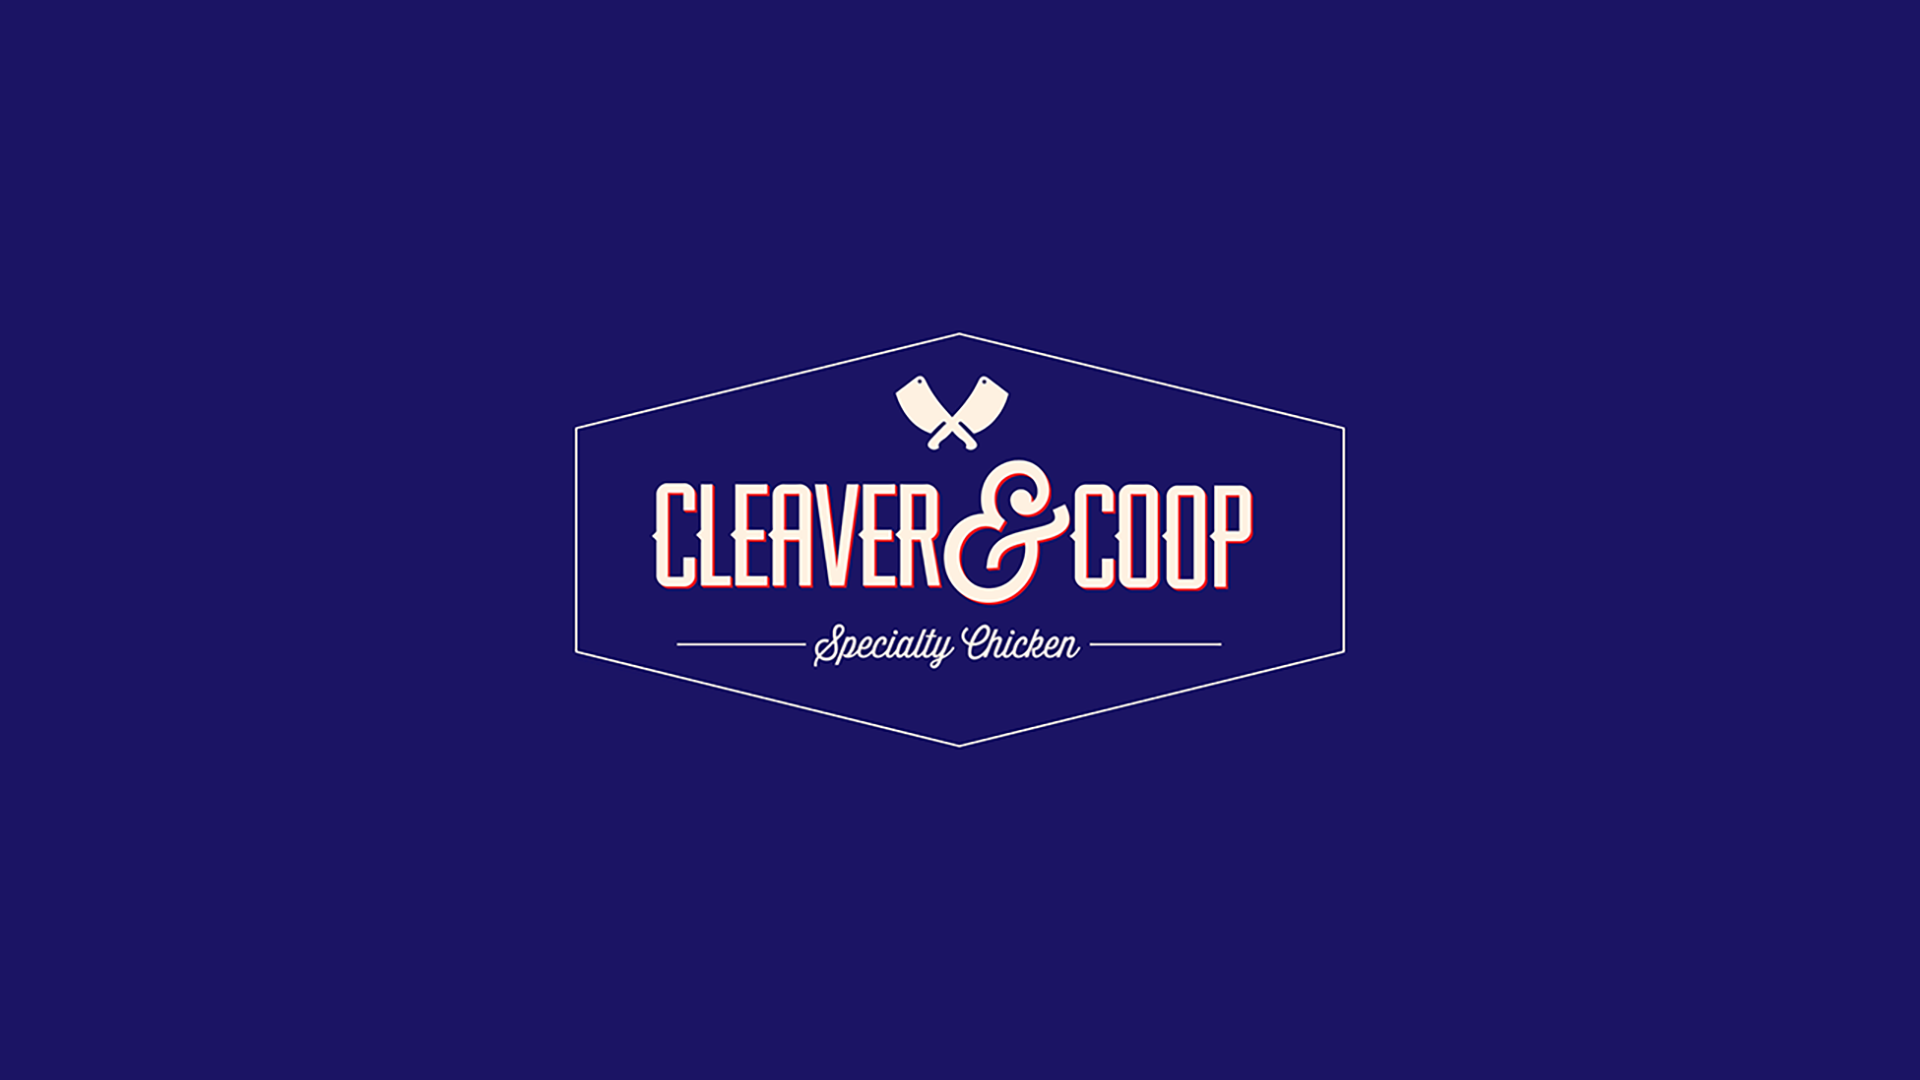 Cleaver & Coop